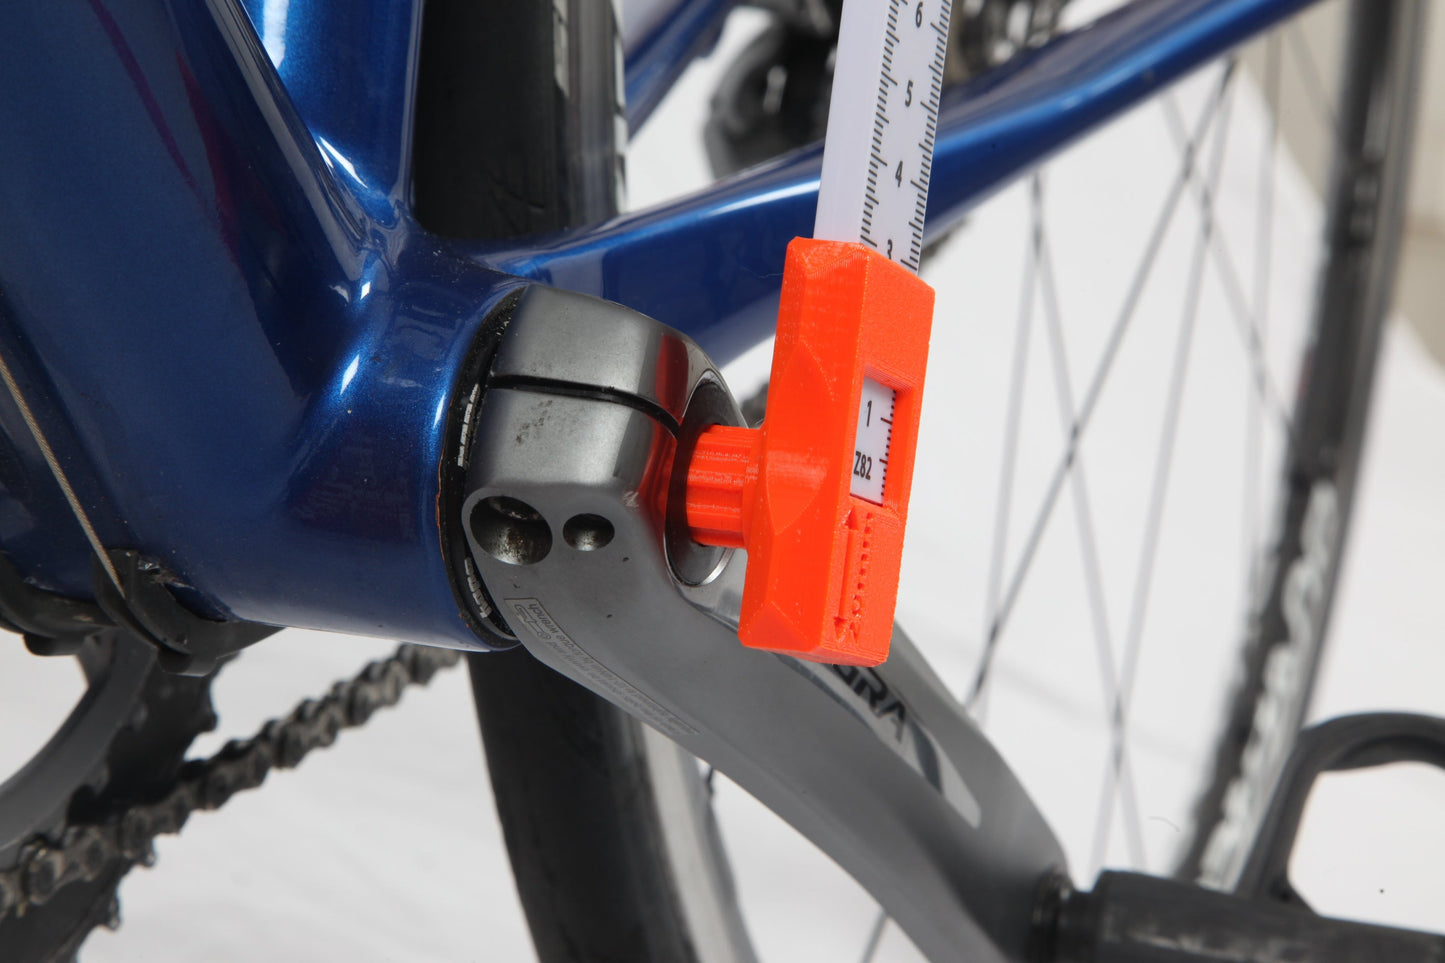 Bike Measurement and setup tool V6